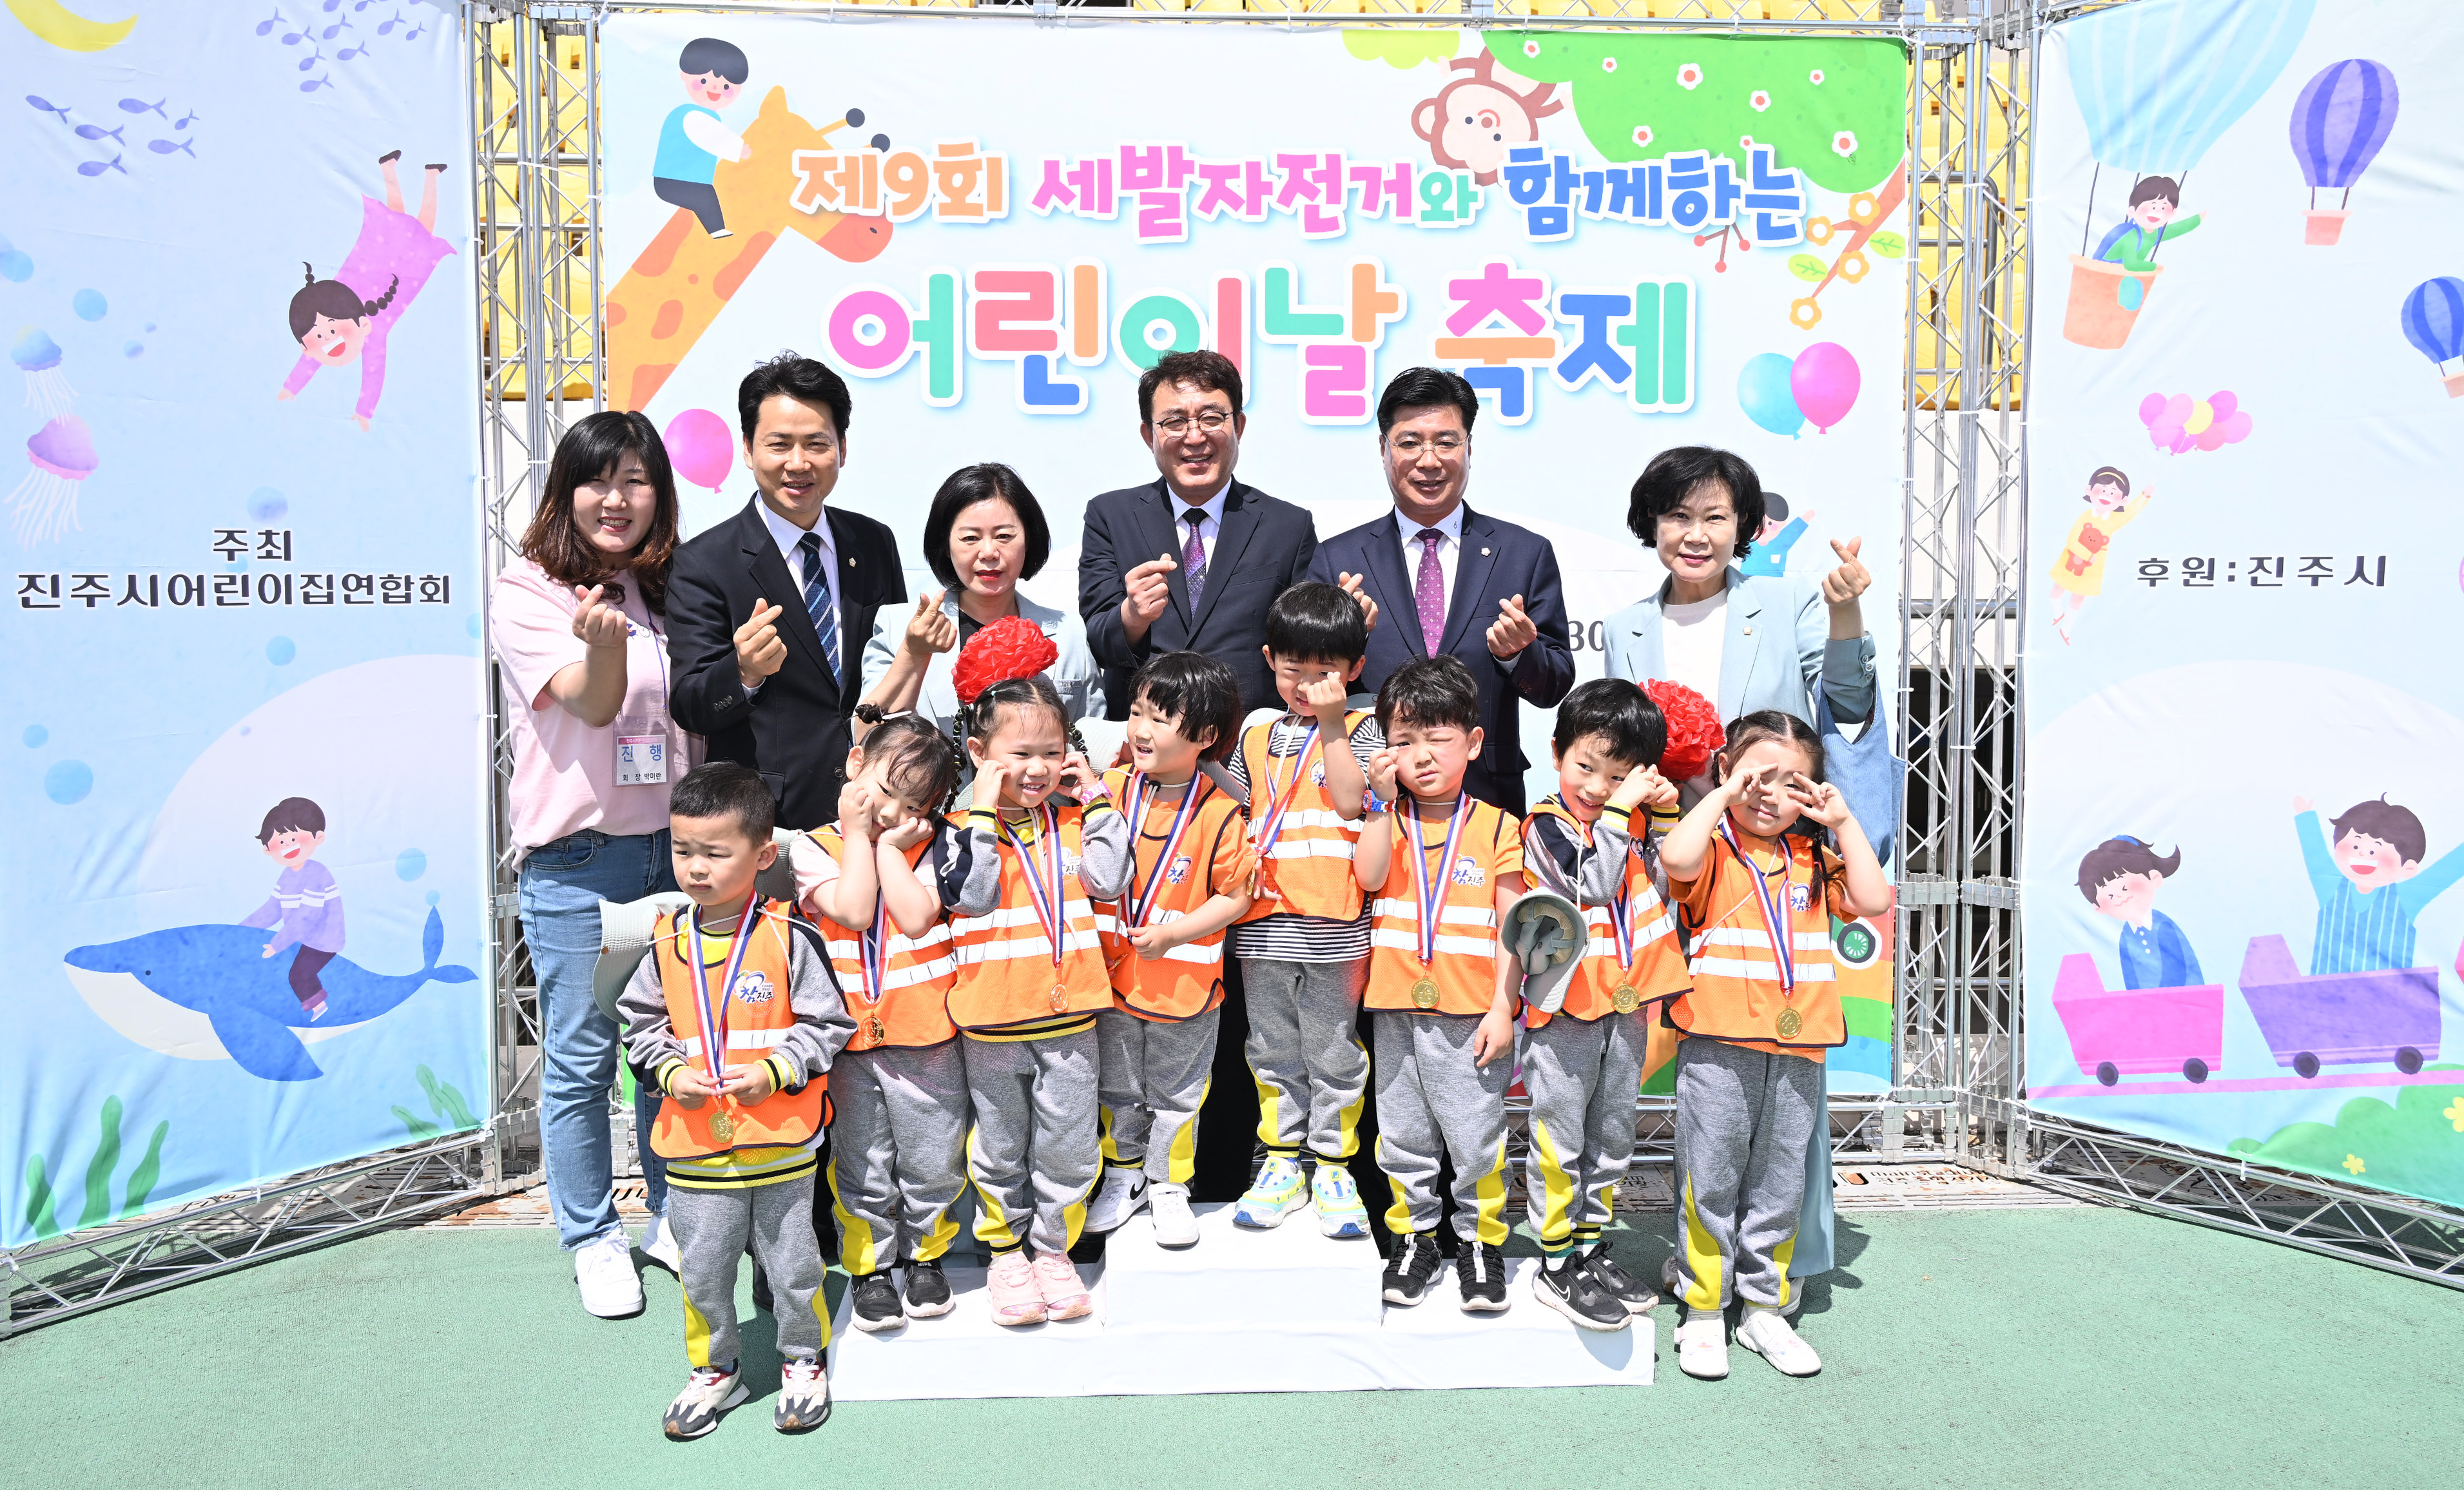 '제9회 어린이 세발자전거와 함께하는 어린이날 축제' 게시글의 사진(7) 'DSC_8771.JPG'